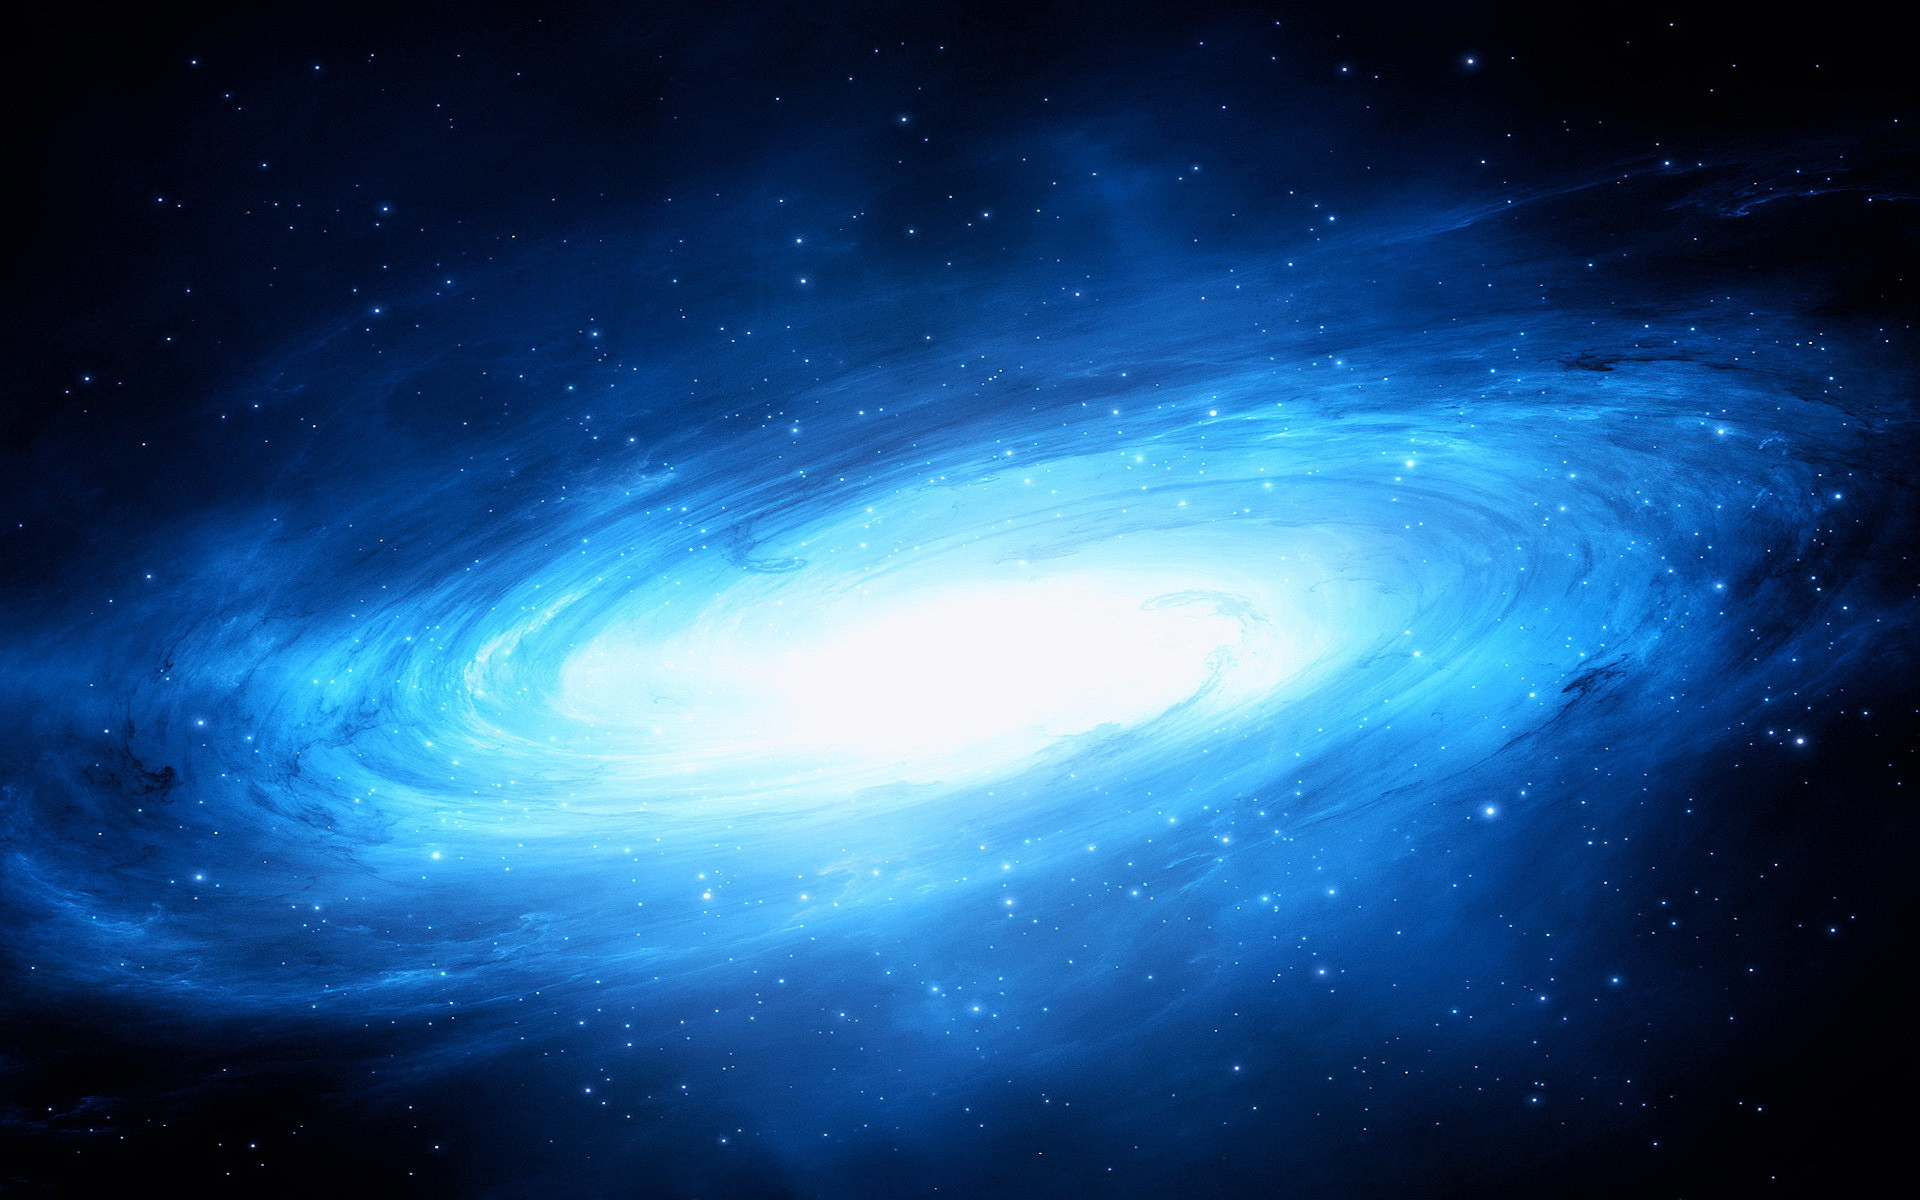 Galaxy blue: Hãy chiêm ngưỡng những bức ảnh về các thiên hà màu xanh ngọc bích tuyệt đẹp, khiến bạn như đang đắm mình trong bầu trời đầy sao biển. Màu sắc tuyệt vời này sẽ làm bạn say đắm và cho bạn cảm giác như thực sự đang sống trong một tinh cầu to lớn. Bạn sẽ không muốn rời mắt khỏi chúng cả ngày đấy!